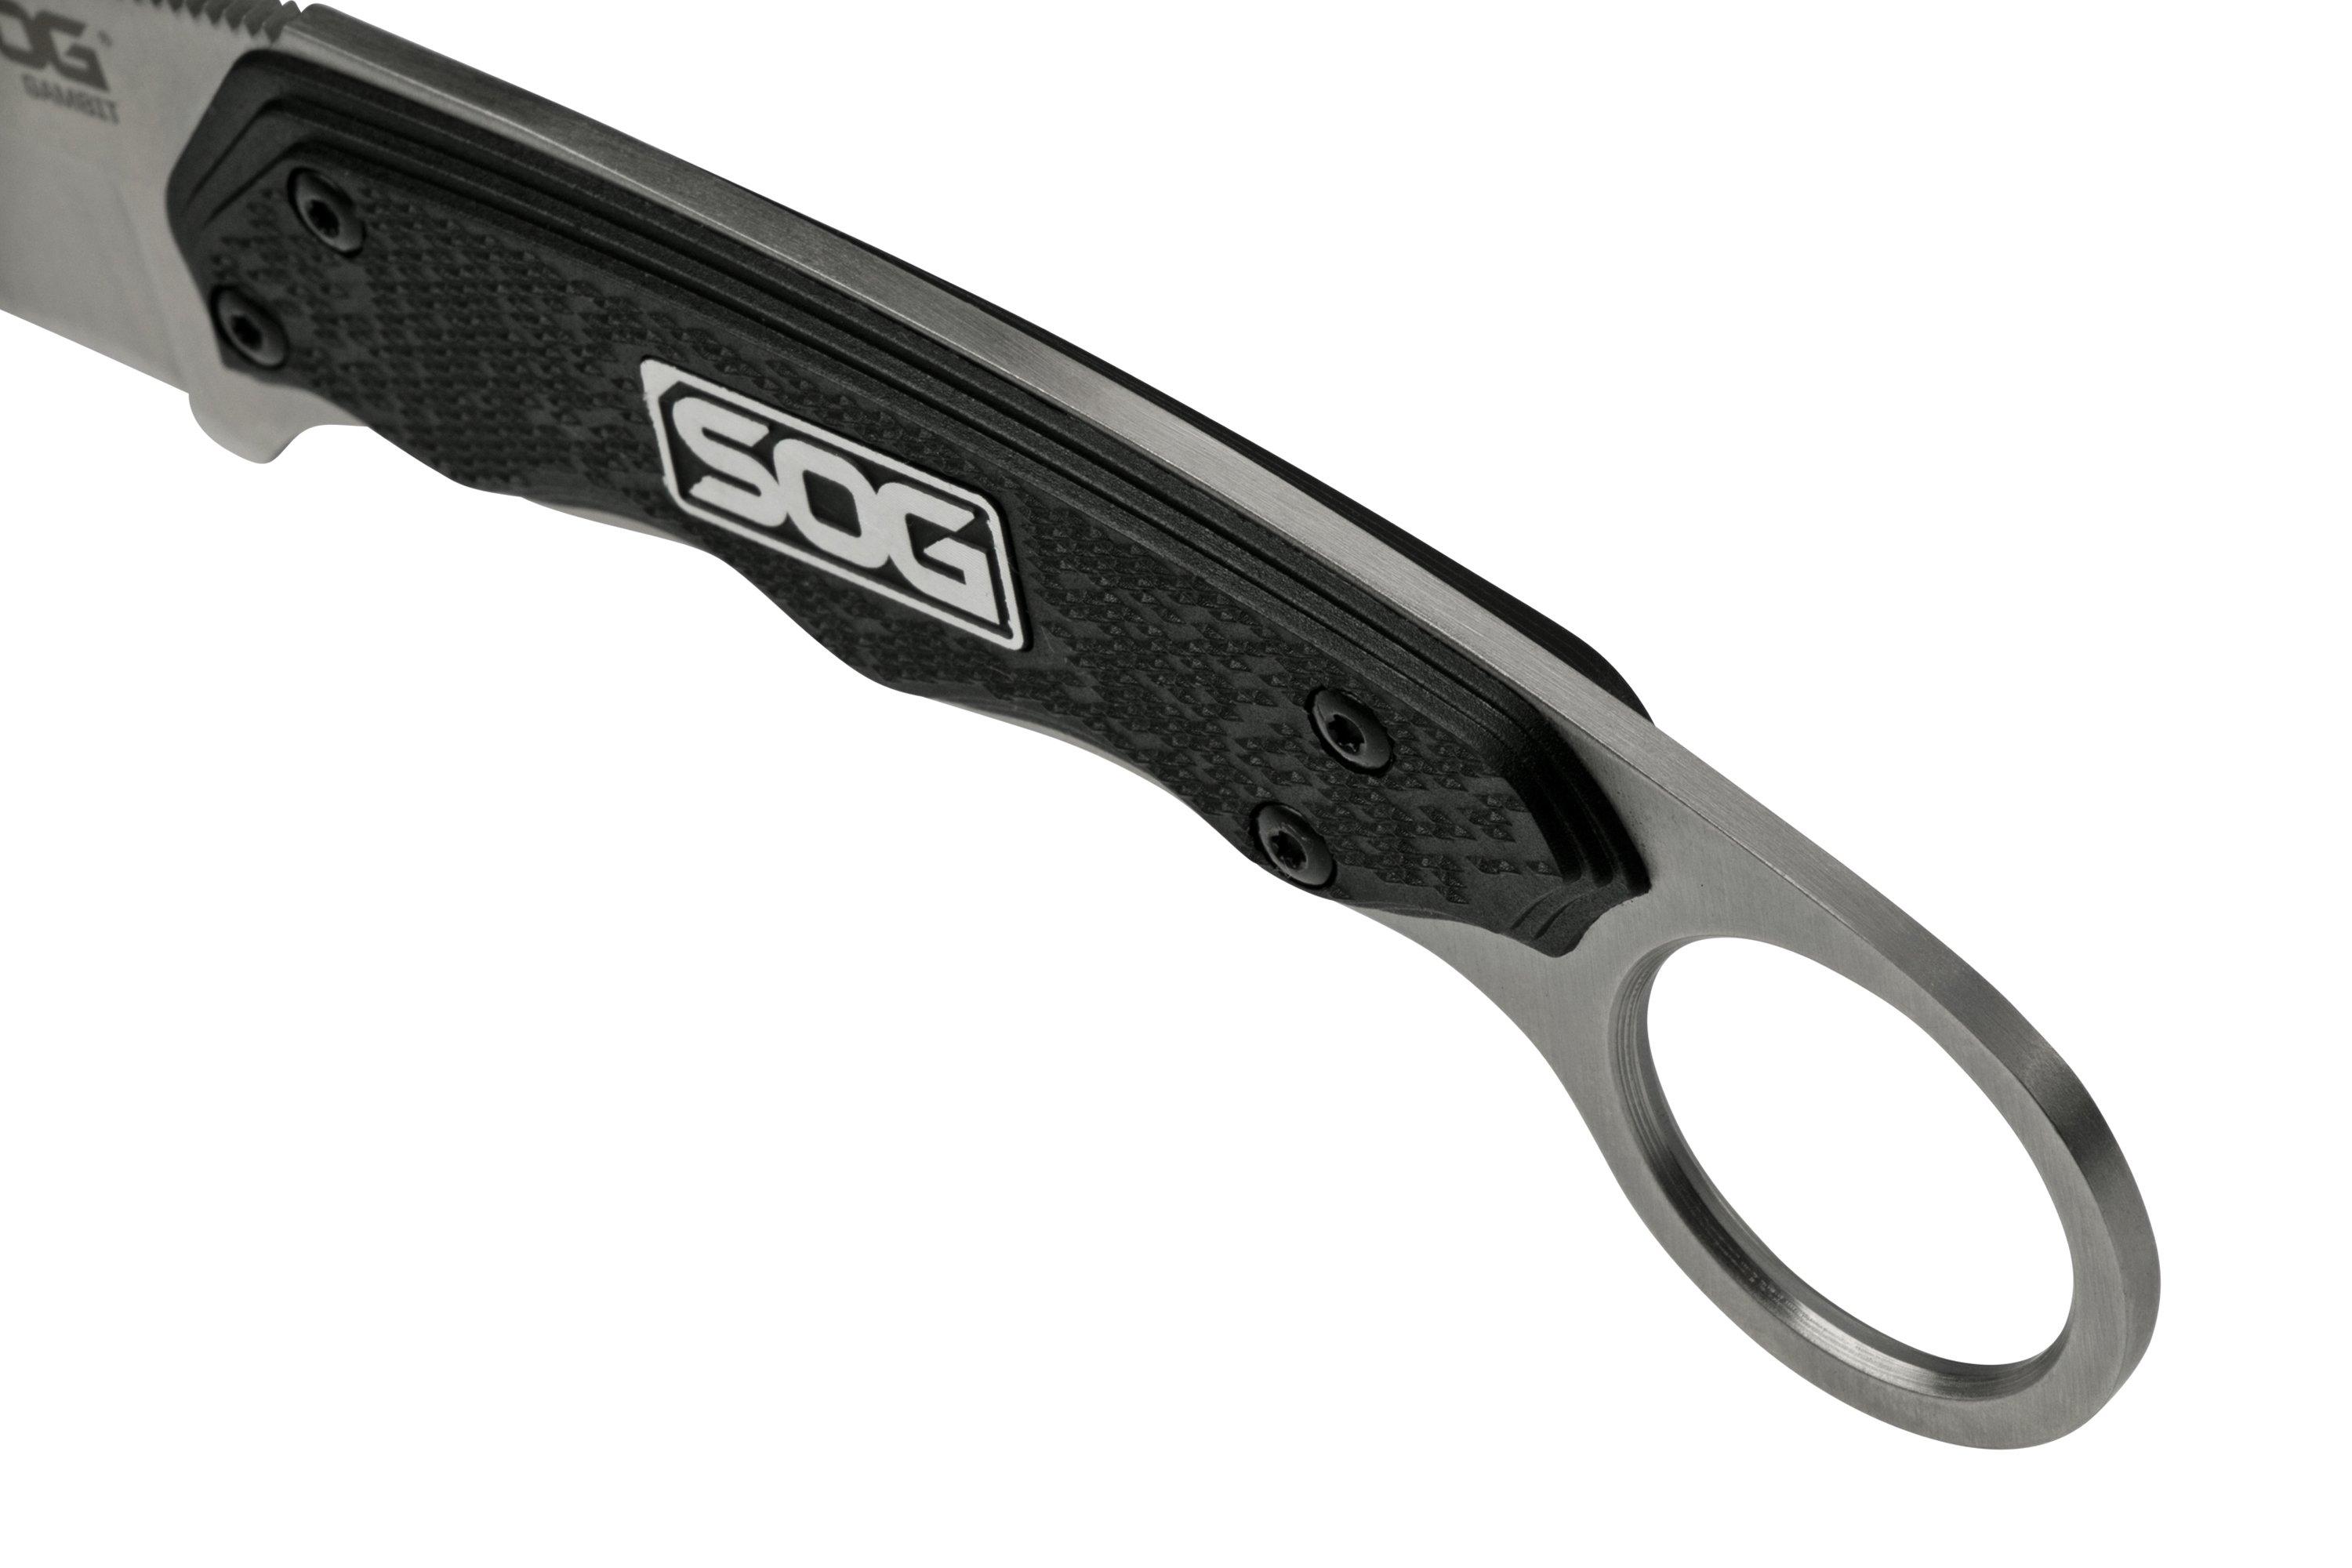 SOG Taschenmesser Key Knife kaufen bei ASMC